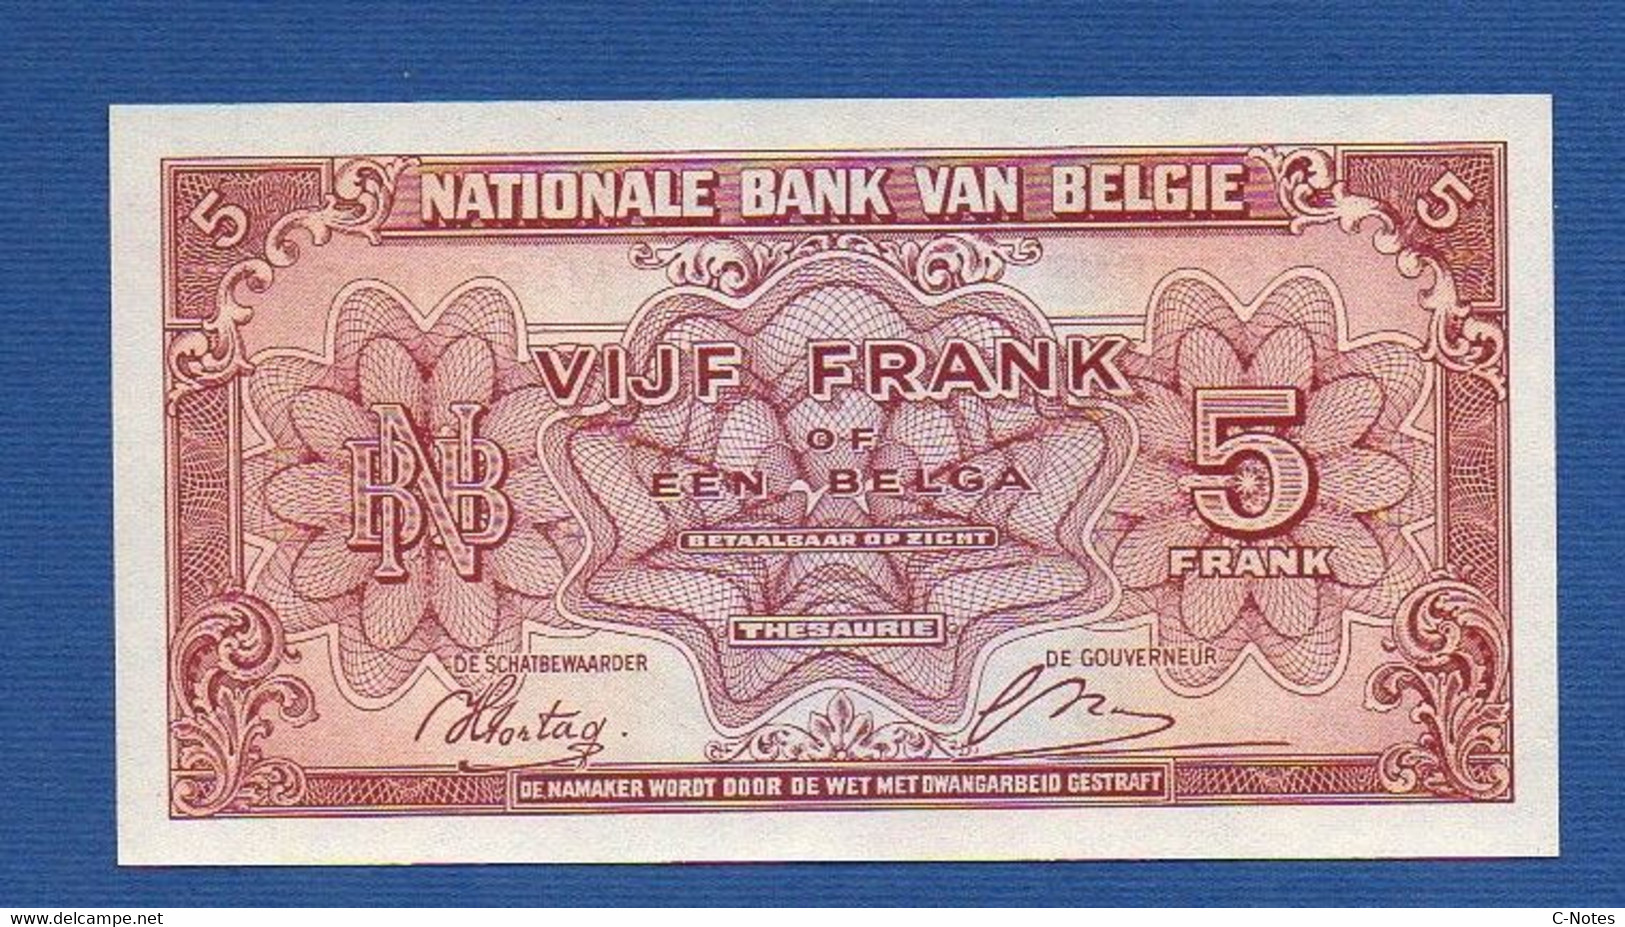 BELGIUM - P.121 - 5 Francs 1943 UNC, Serie M1 624625 - 5 Francs